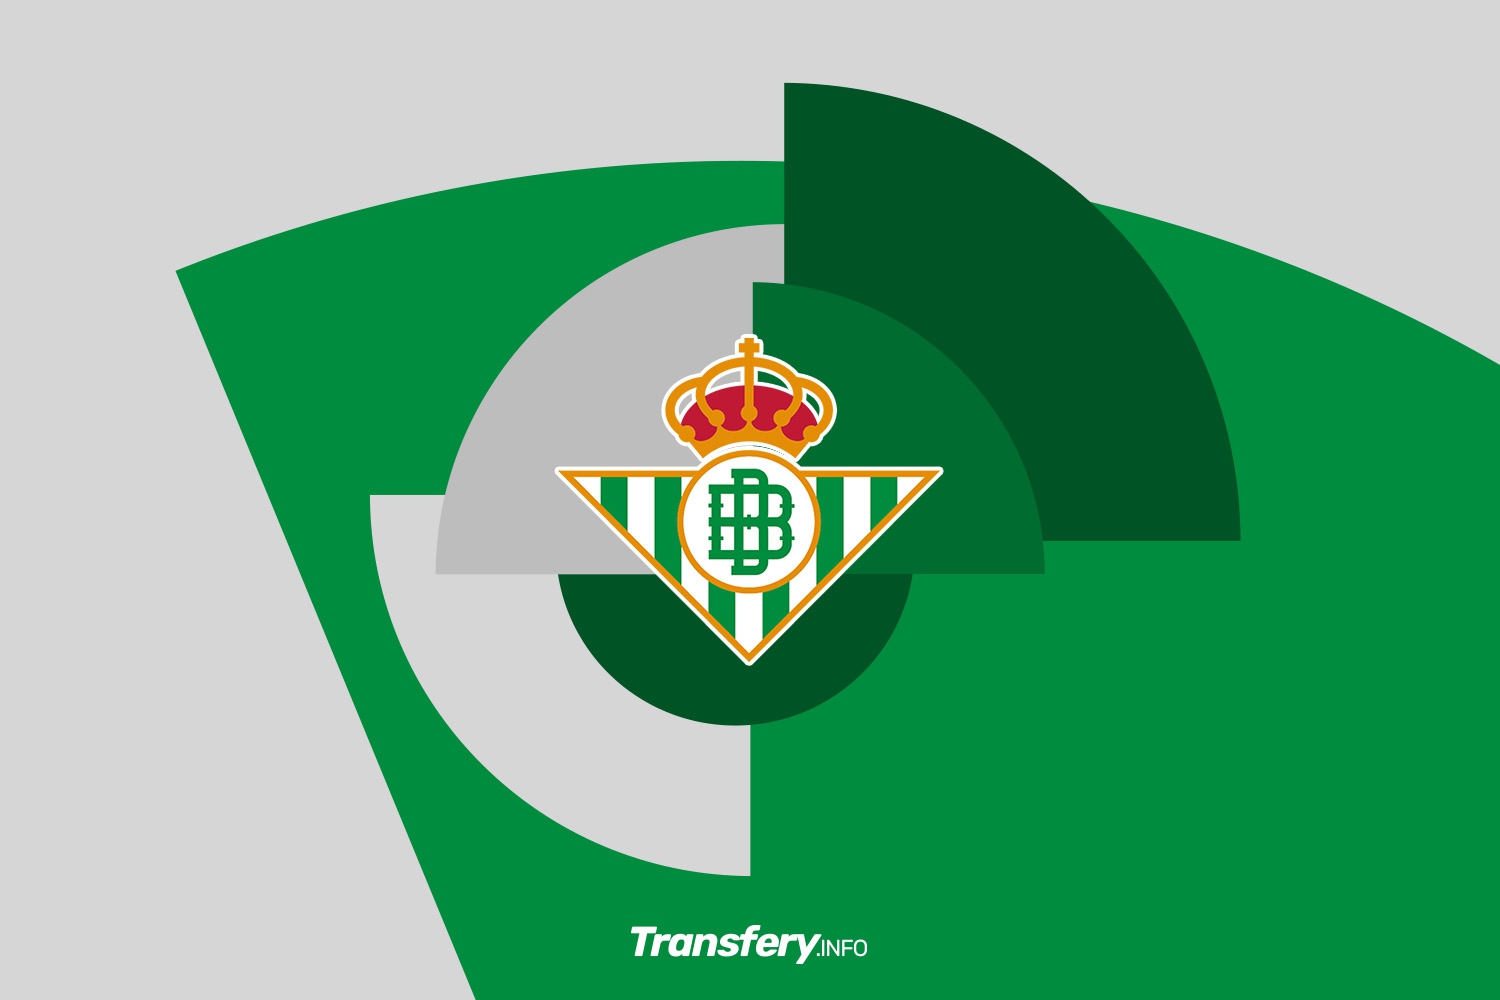 OFICJALNIE: Real Betis zatrzymał środkowego obrońcę na kolejny sezon